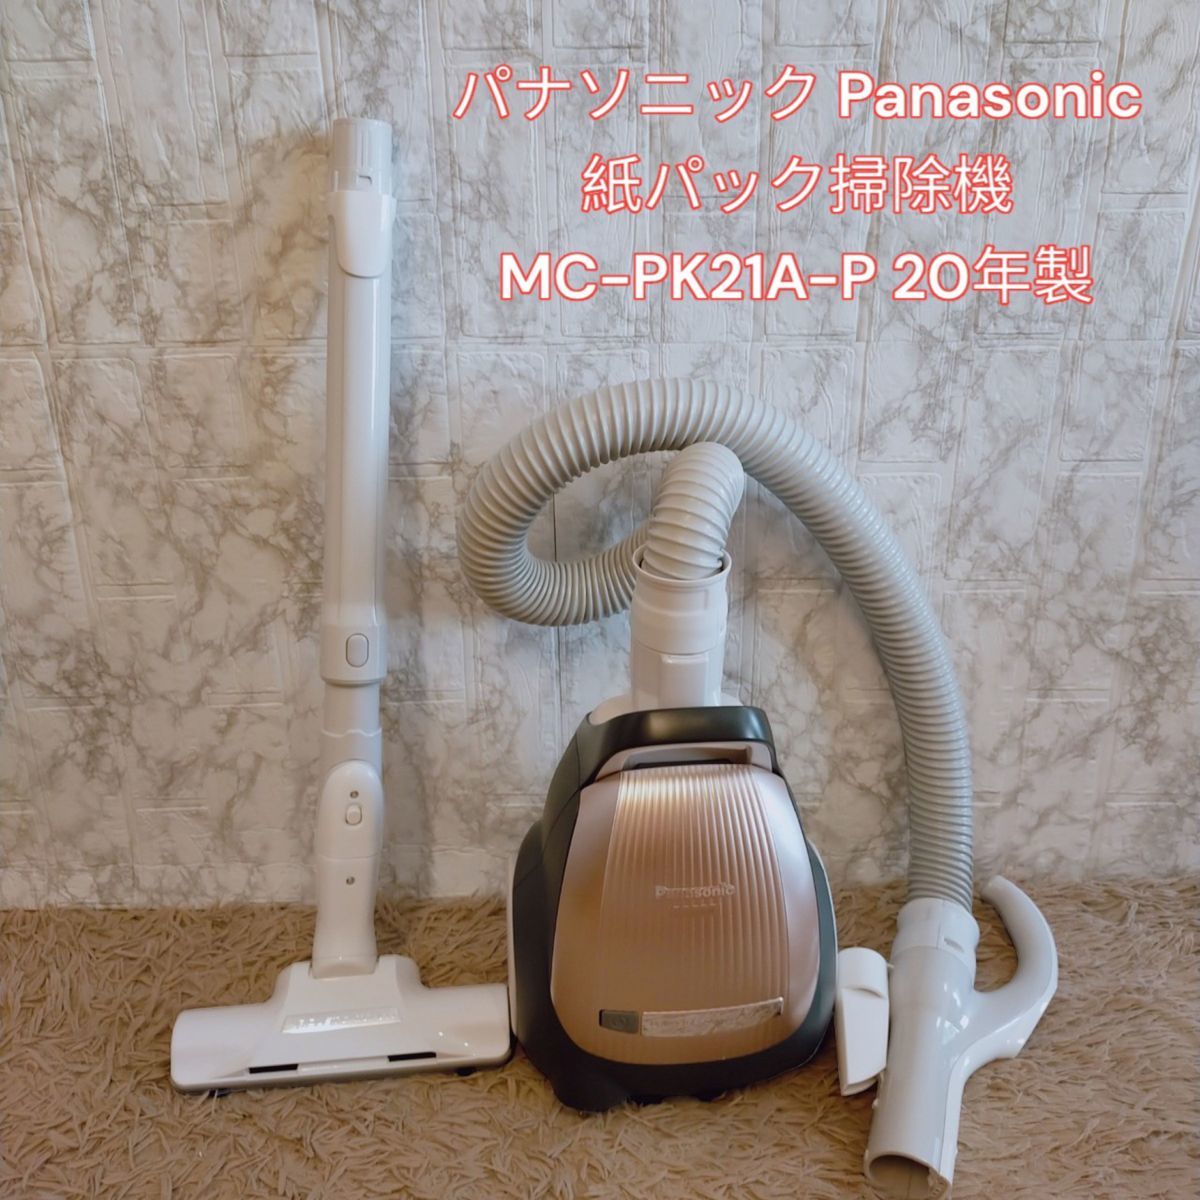 パナソニック Panasonic 紙パック掃除機 MC-PK21A-P 20年製